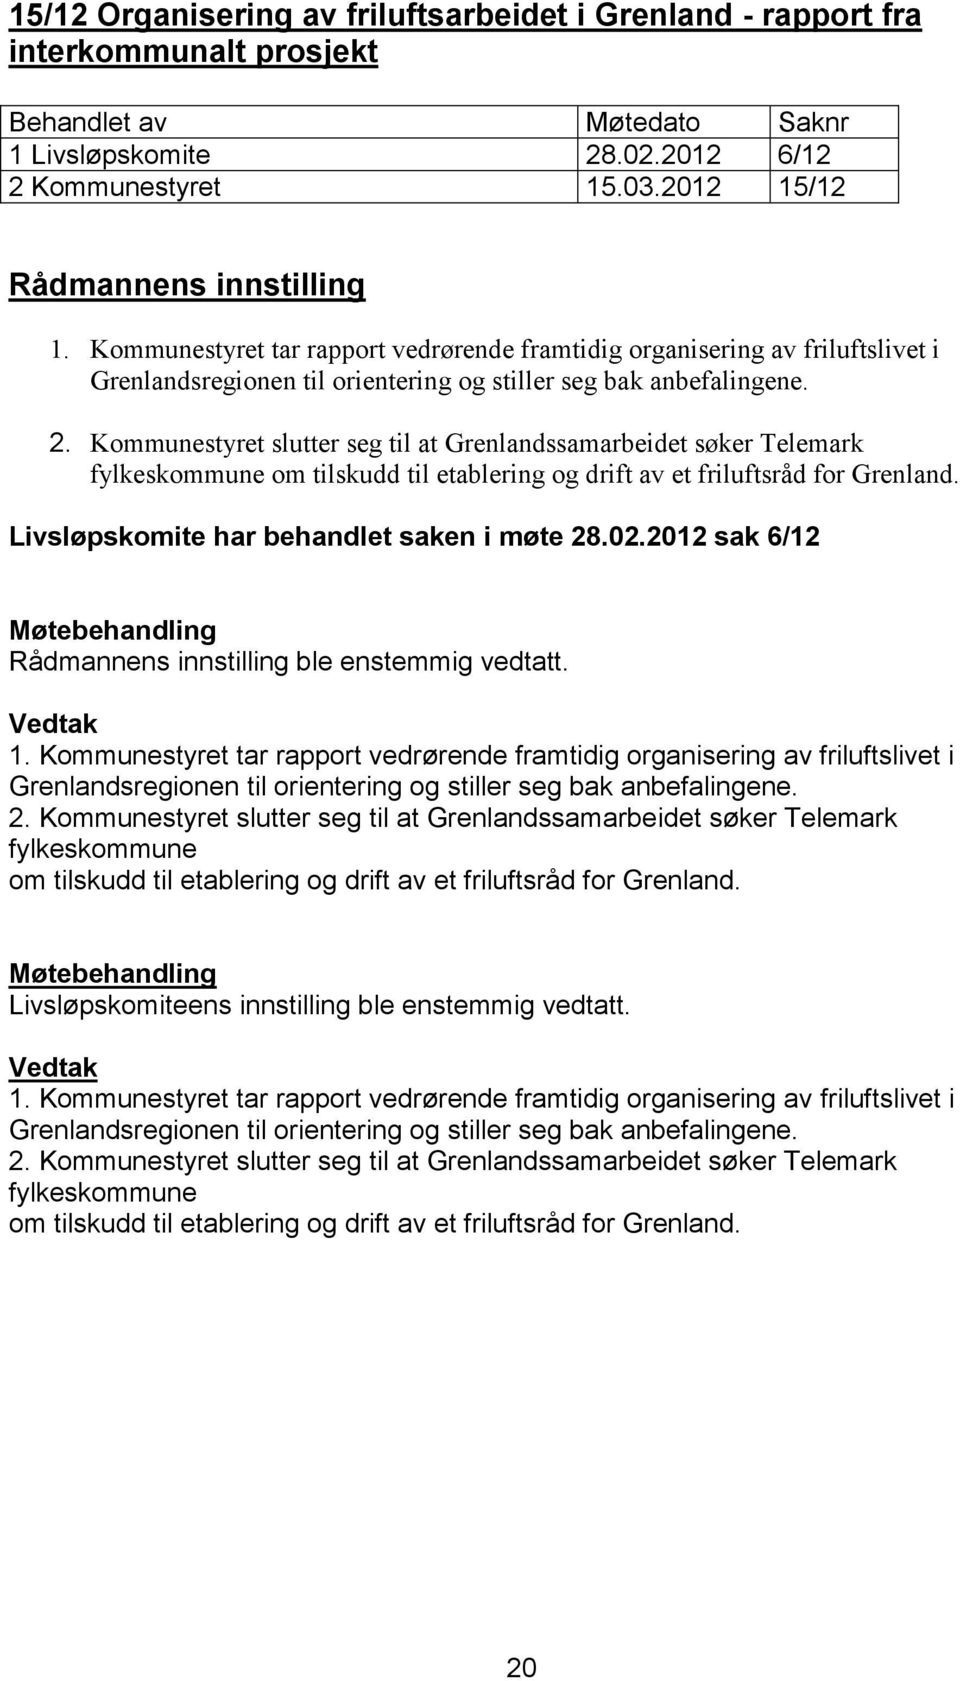 Kommunestyret slutter seg til at Grenlandssamarbeidet søker Telemark fylkeskommune om tilskudd til etablering og drift av et friluftsråd for Grenland. Livsløpskomite har behandlet saken i møte 28.02.